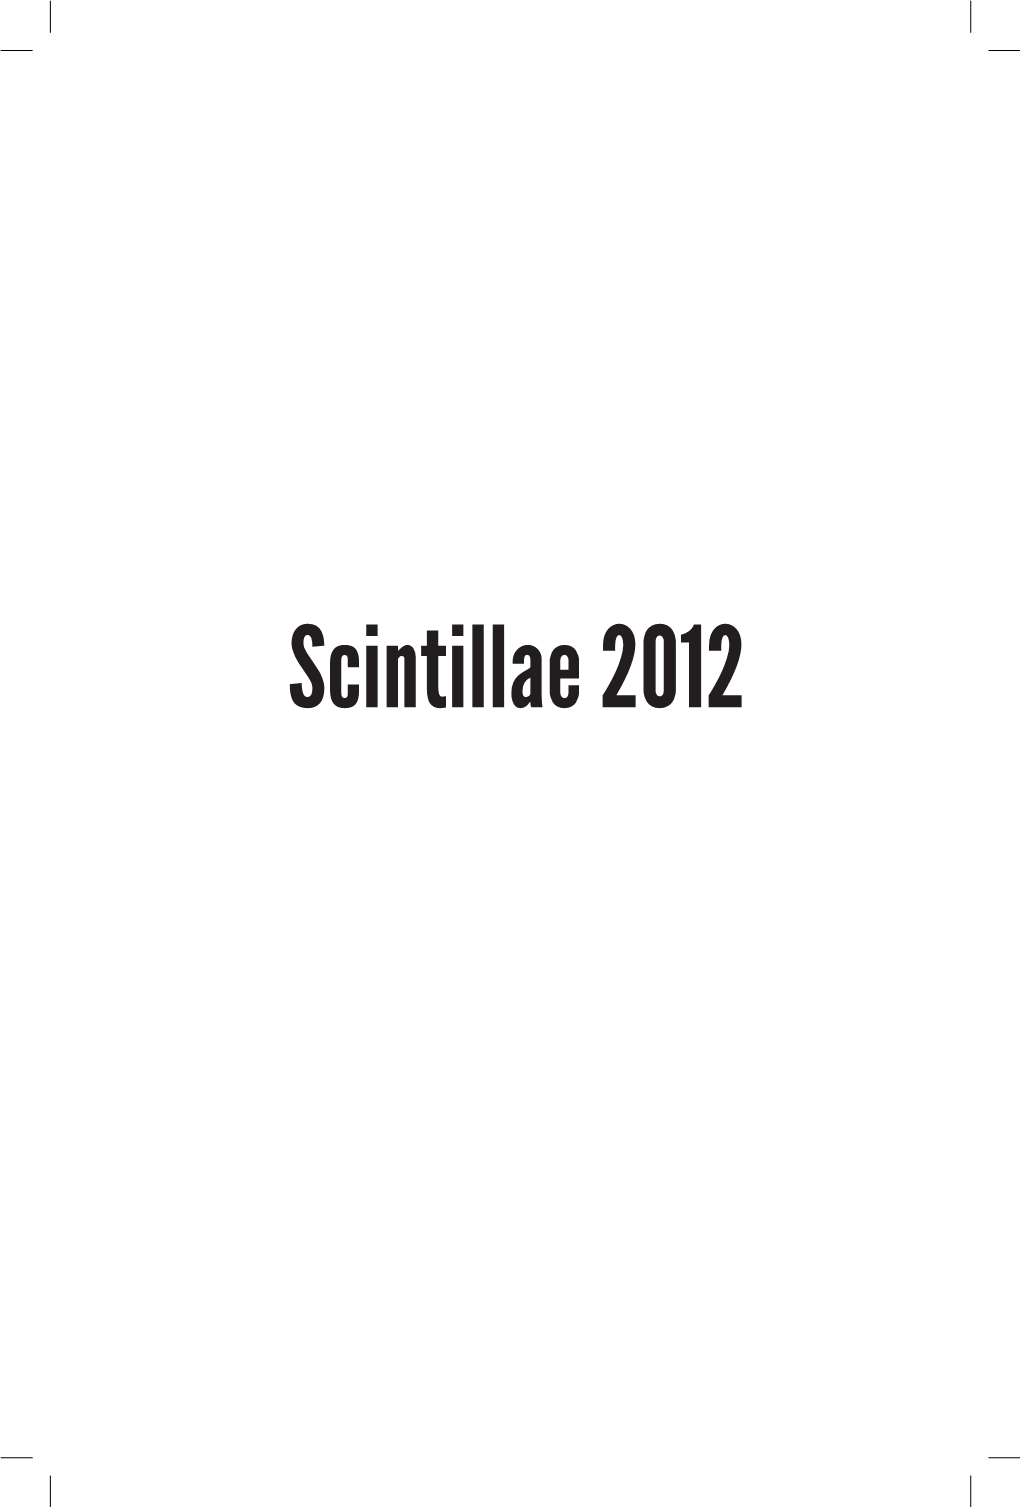 Scintillae 2012